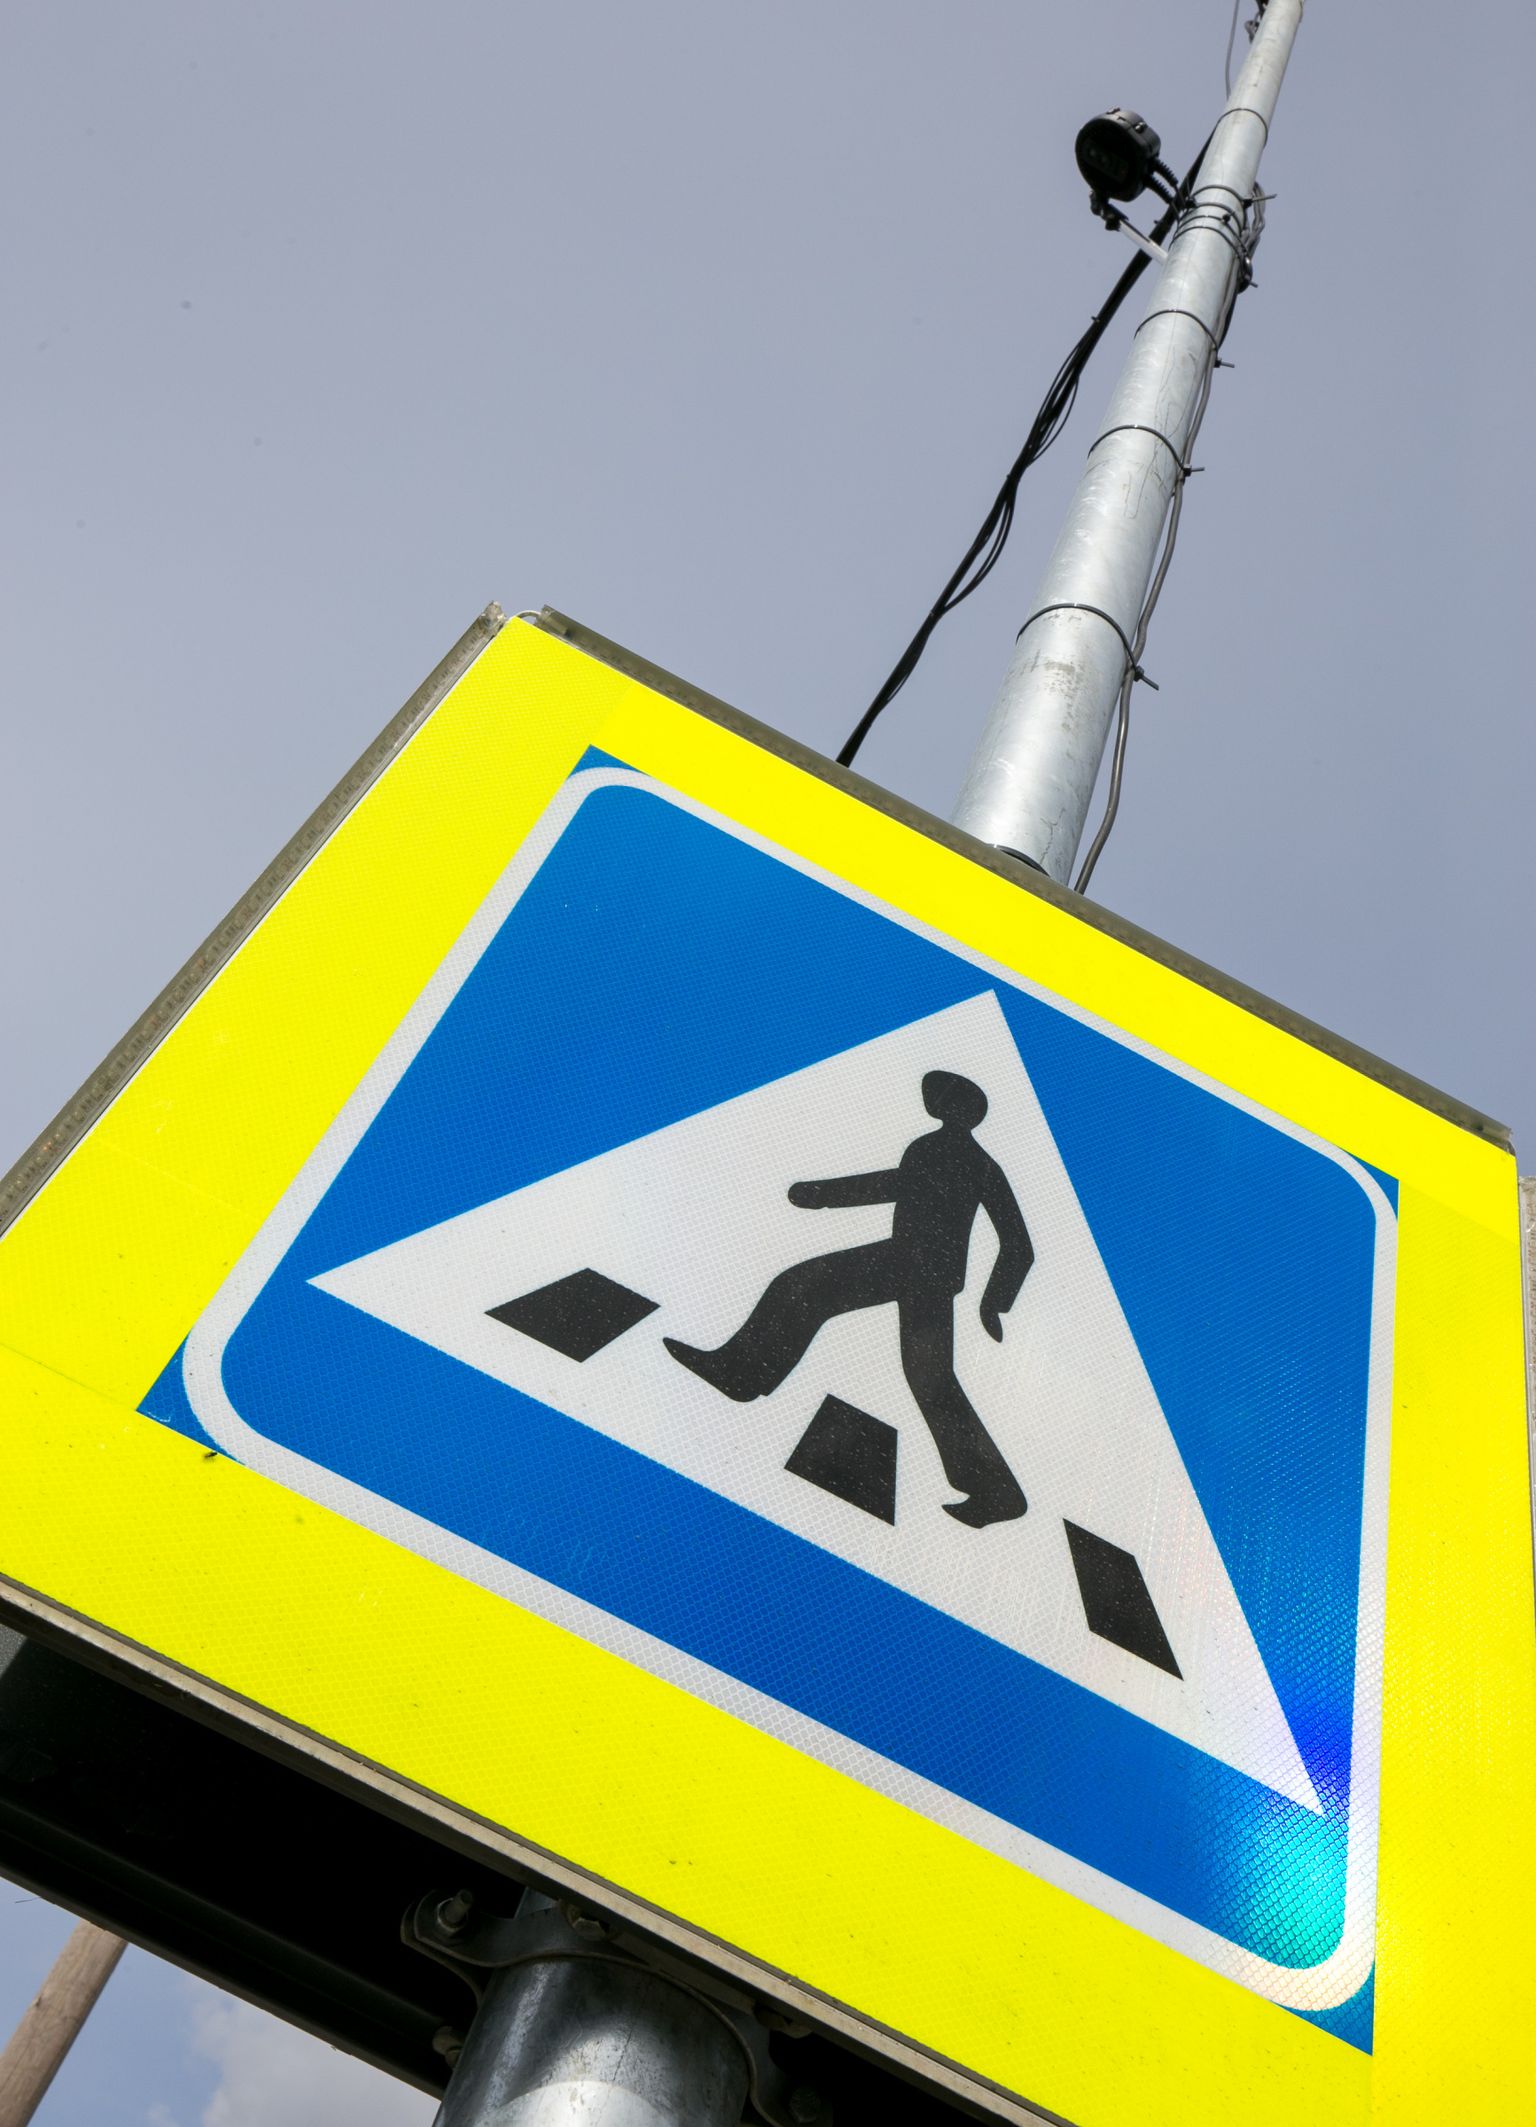 Pärnus on vilkuvate leedtuledega liiklusmärgid üleval Mai kooli juures.